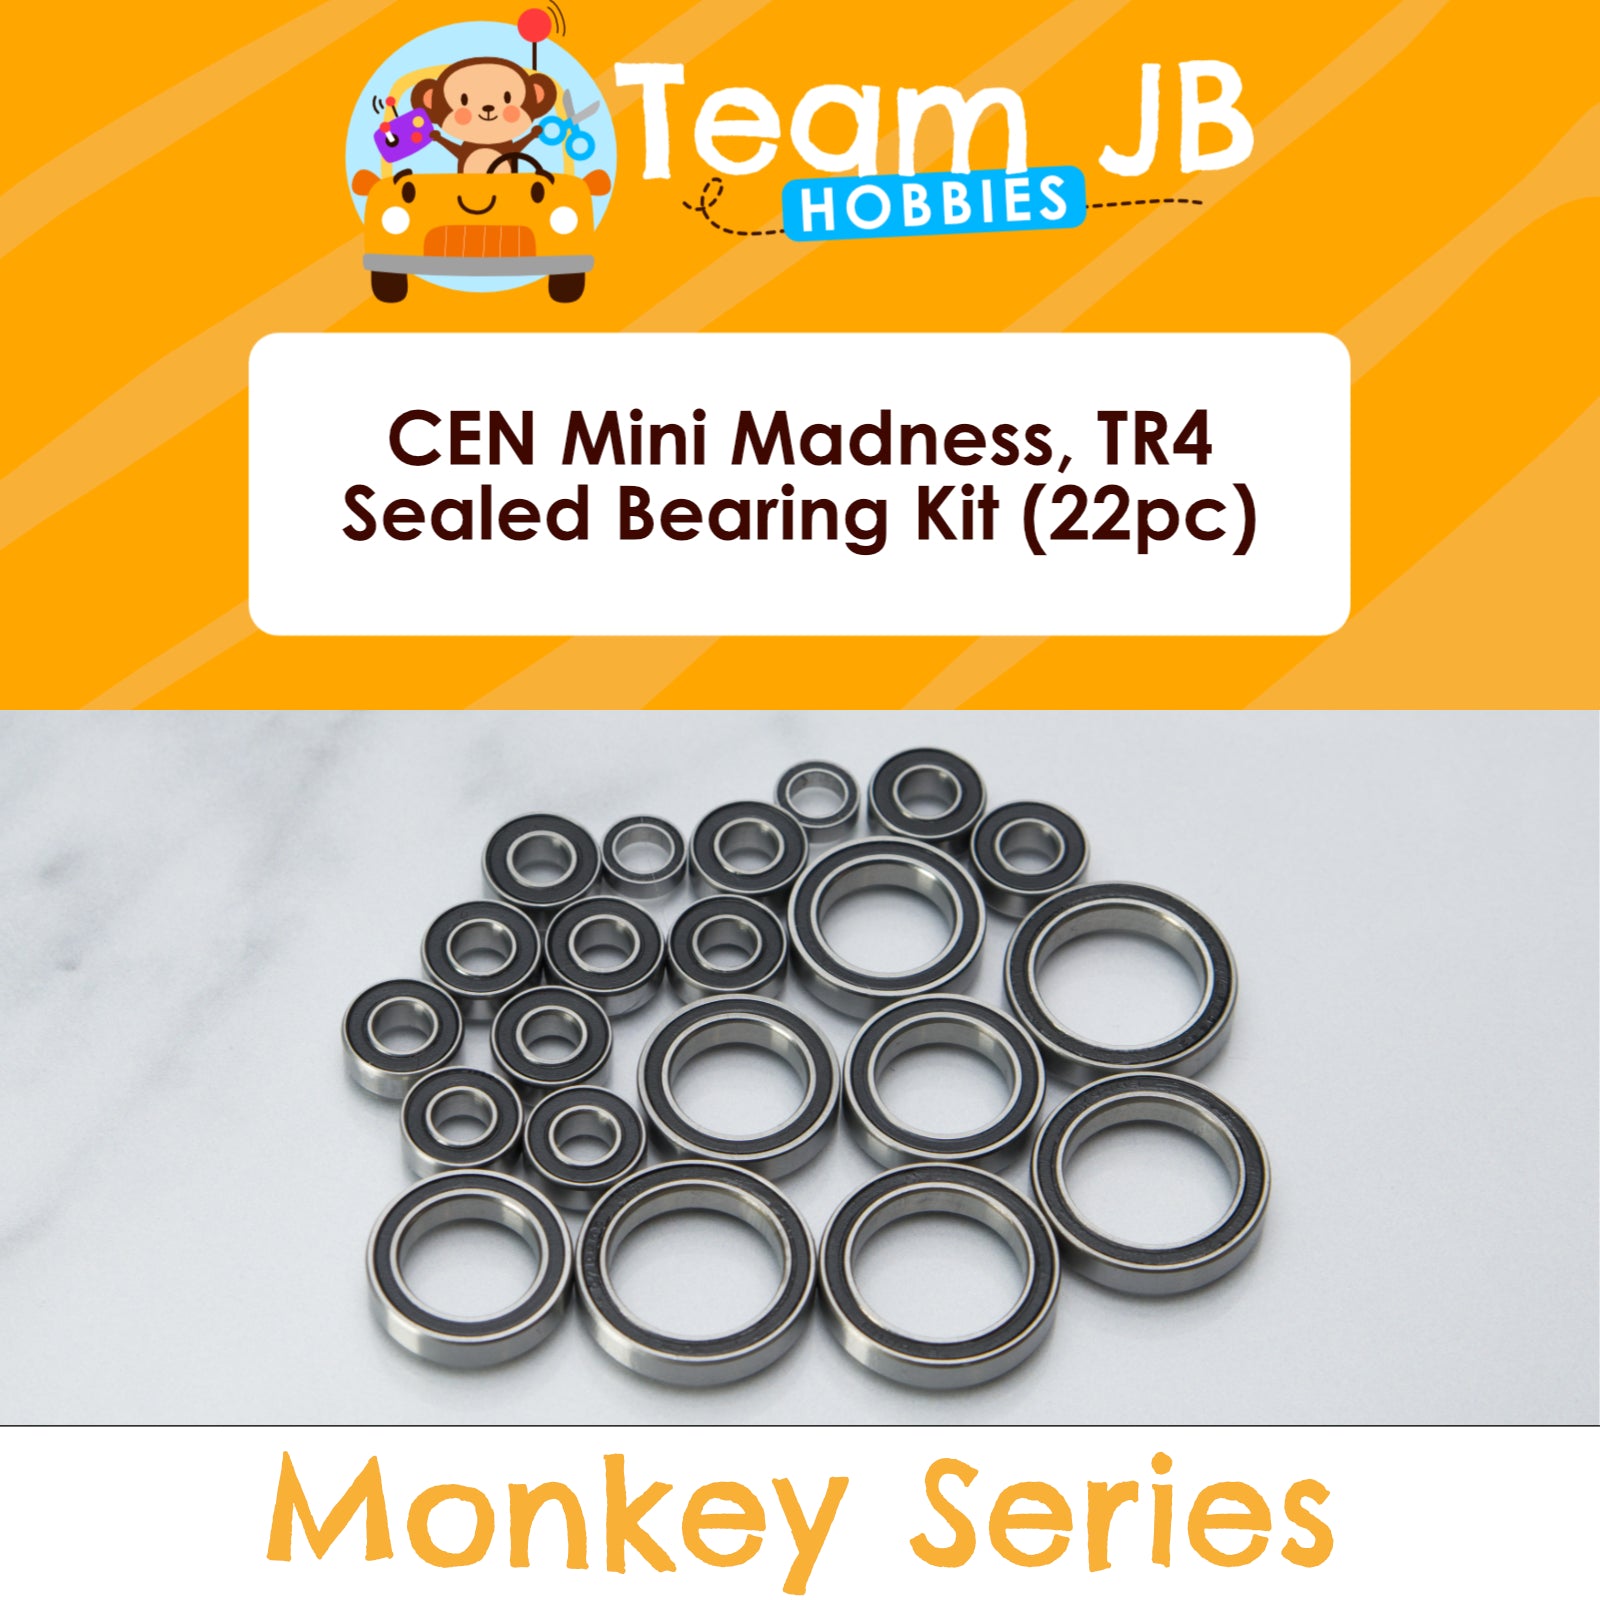 CEN Mini Madness, TR4 - Sealed Bearing Kit